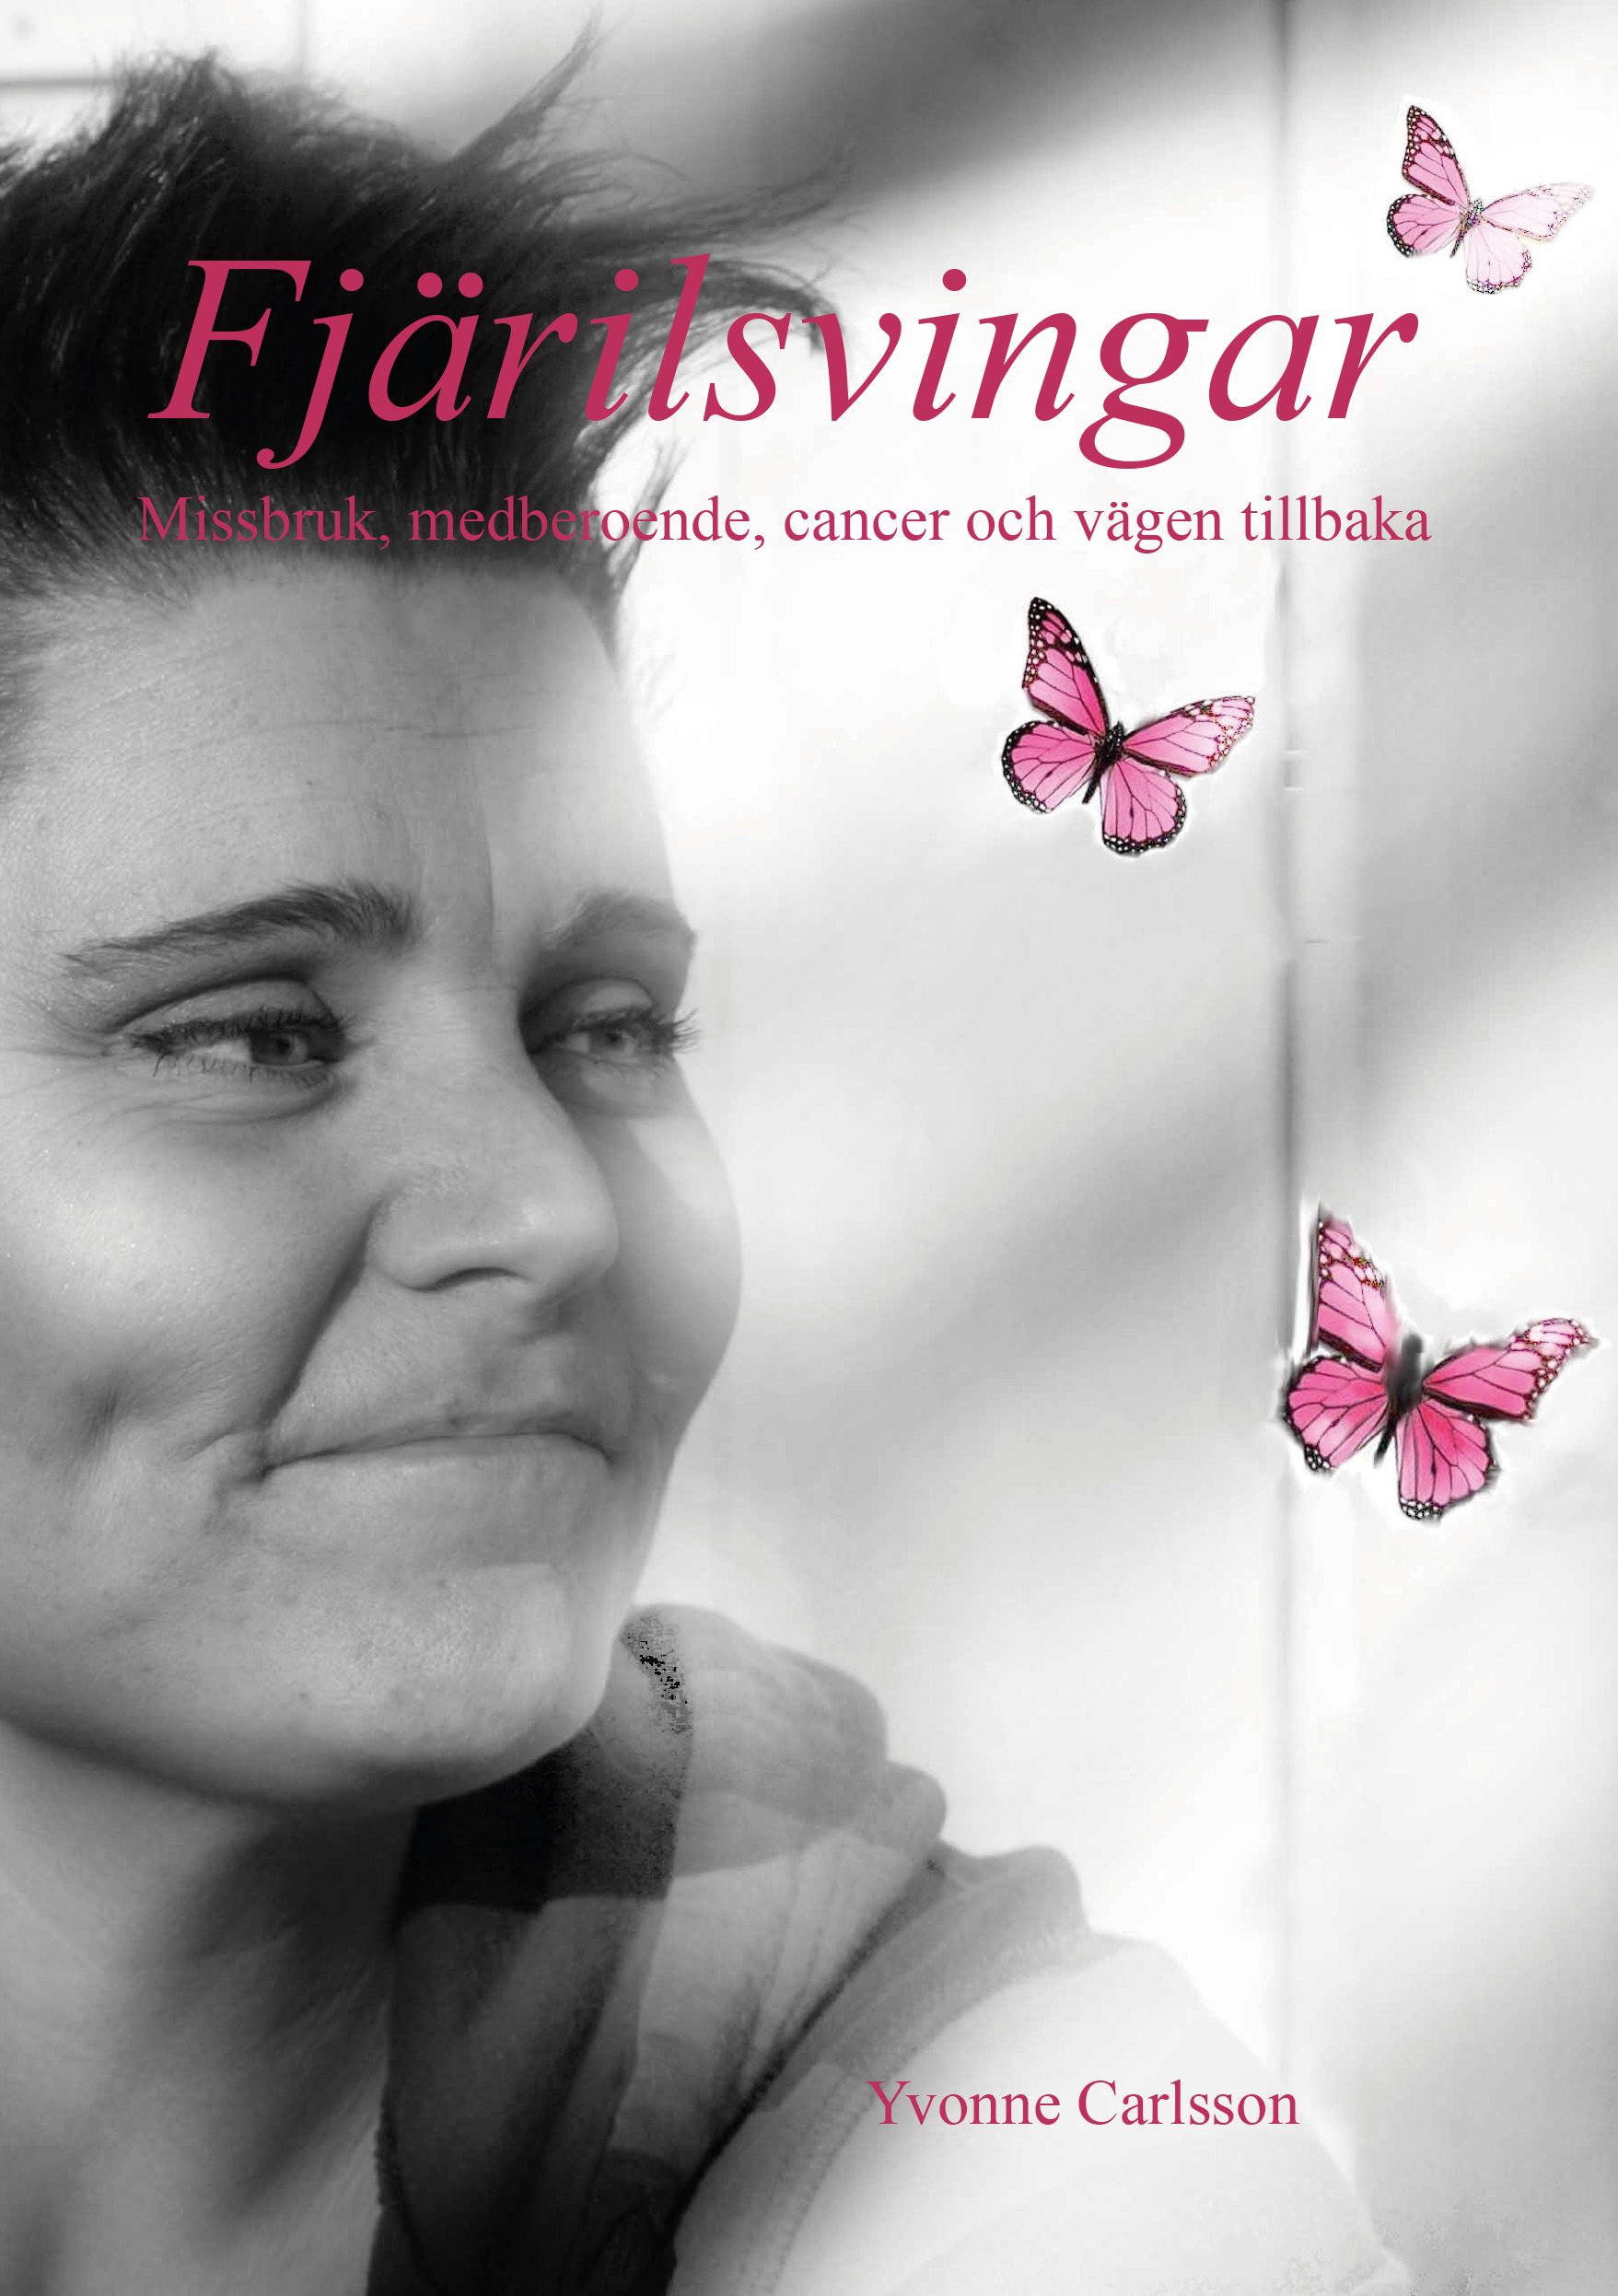 Fjärilsvingar - Missbruk, medberoende, cancer och vägen tillbaka, e-bok av Yvonne Carlsson